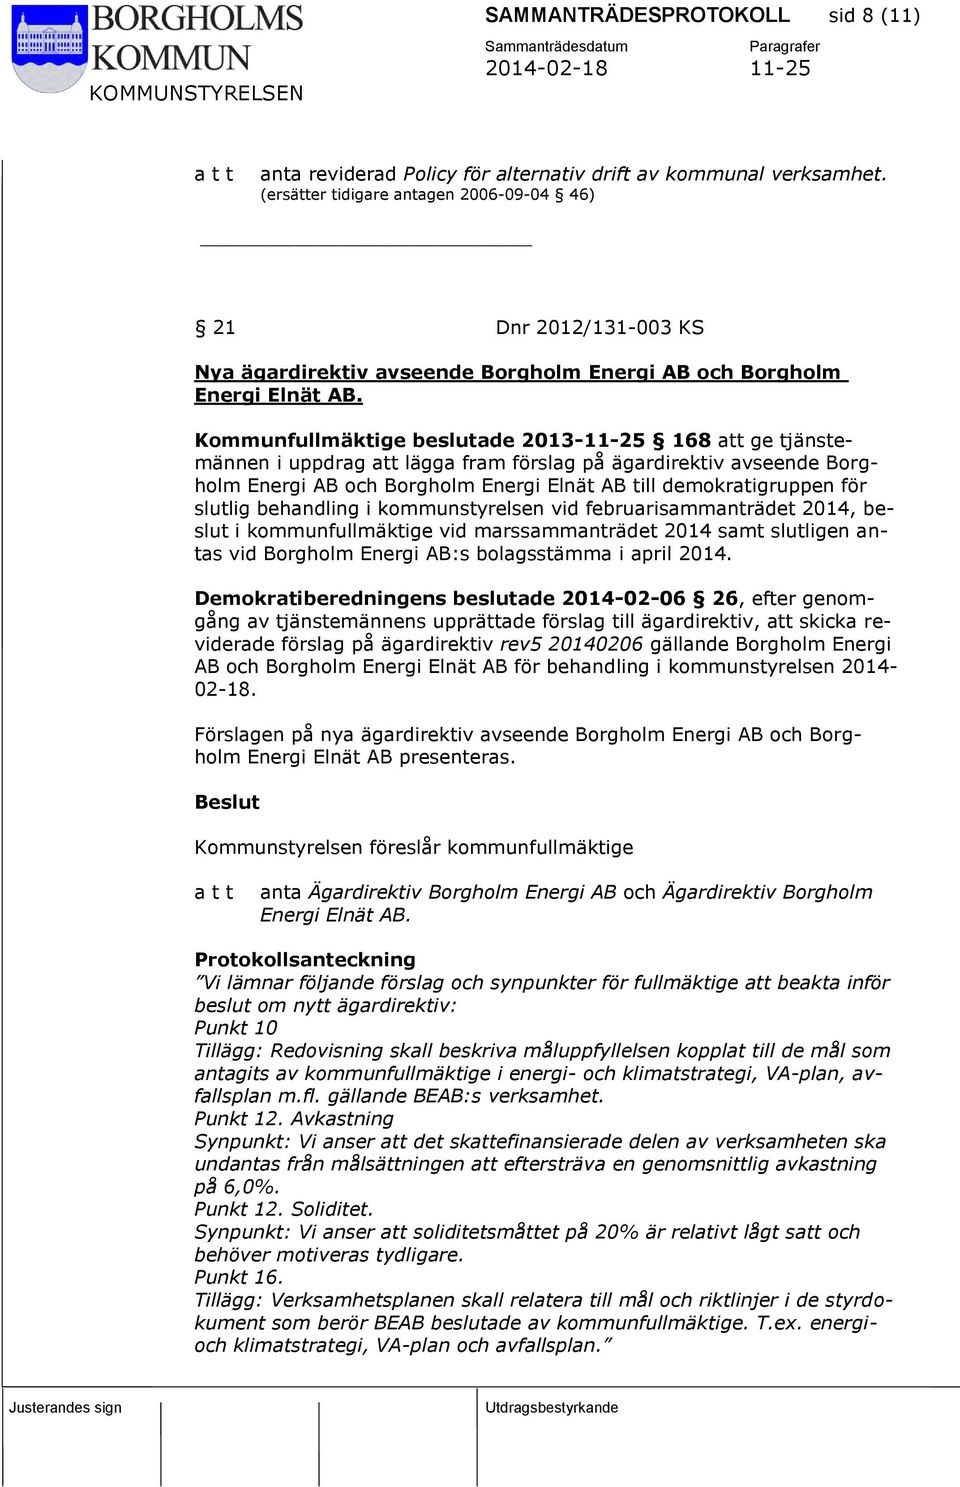 Kommunfullmäktige beslutade 2013-11-25 168 att ge tjänstemännen i uppdrag att lägga fram förslag på ägardirektiv avseende Borgholm Energi AB och Borgholm Energi Elnät AB till demokratigruppen för